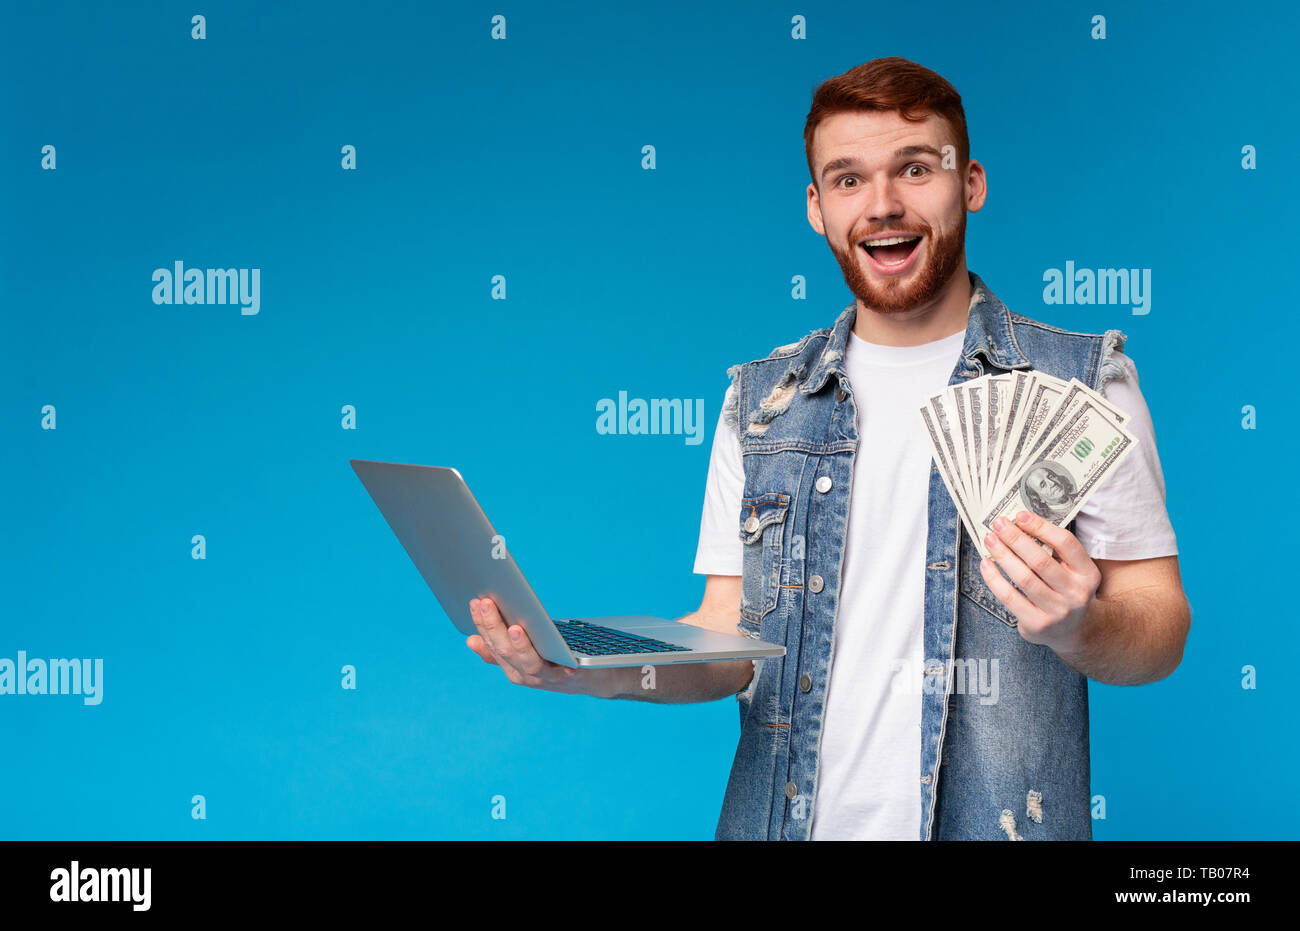 Happy young guy gagner de l'argent dans l'internet Banque D'Images